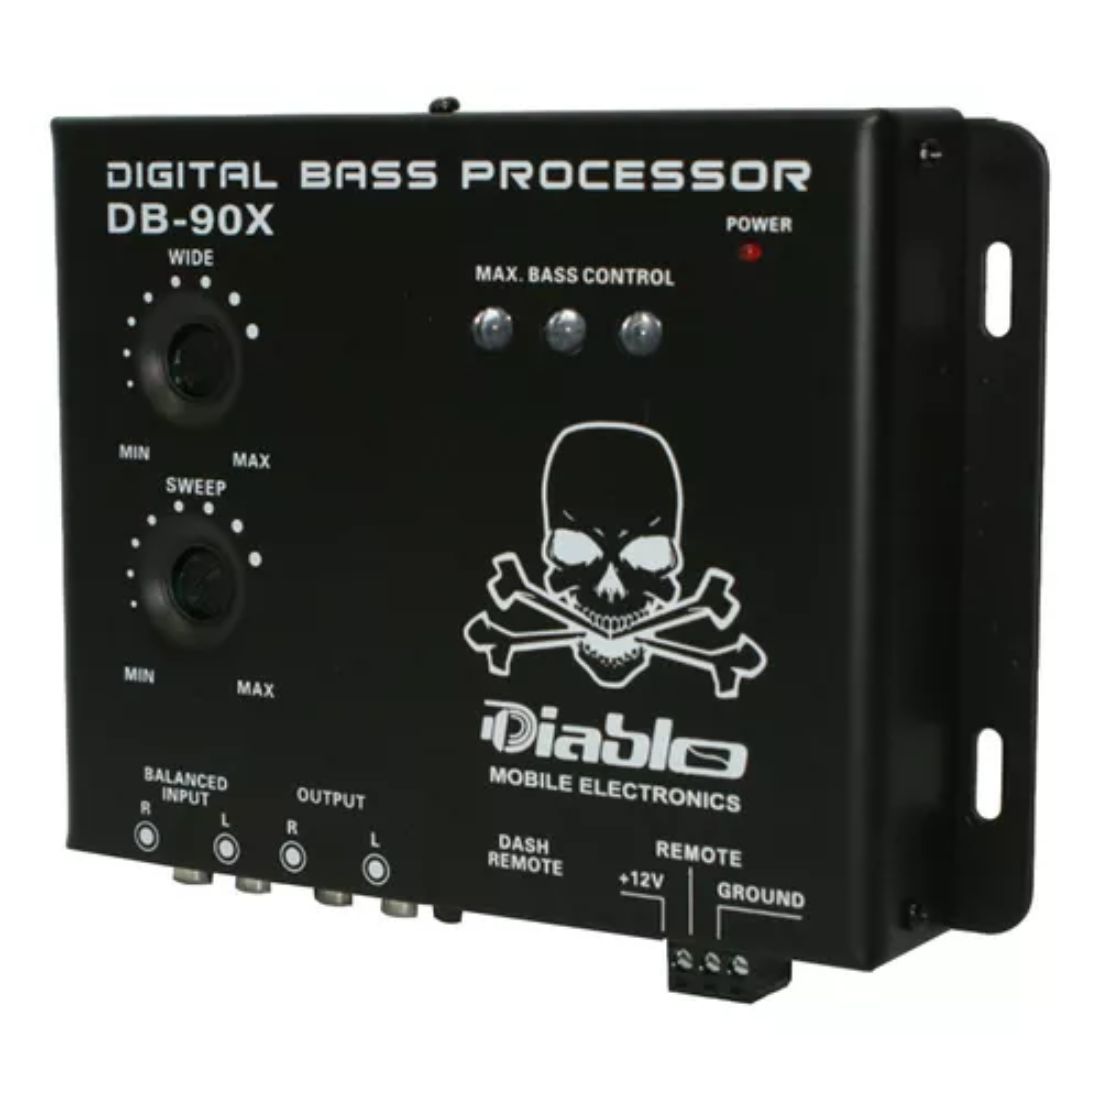 Diablo DB-90X Car Audio Digital Bass Processor w/ Dash Mount Remote Control